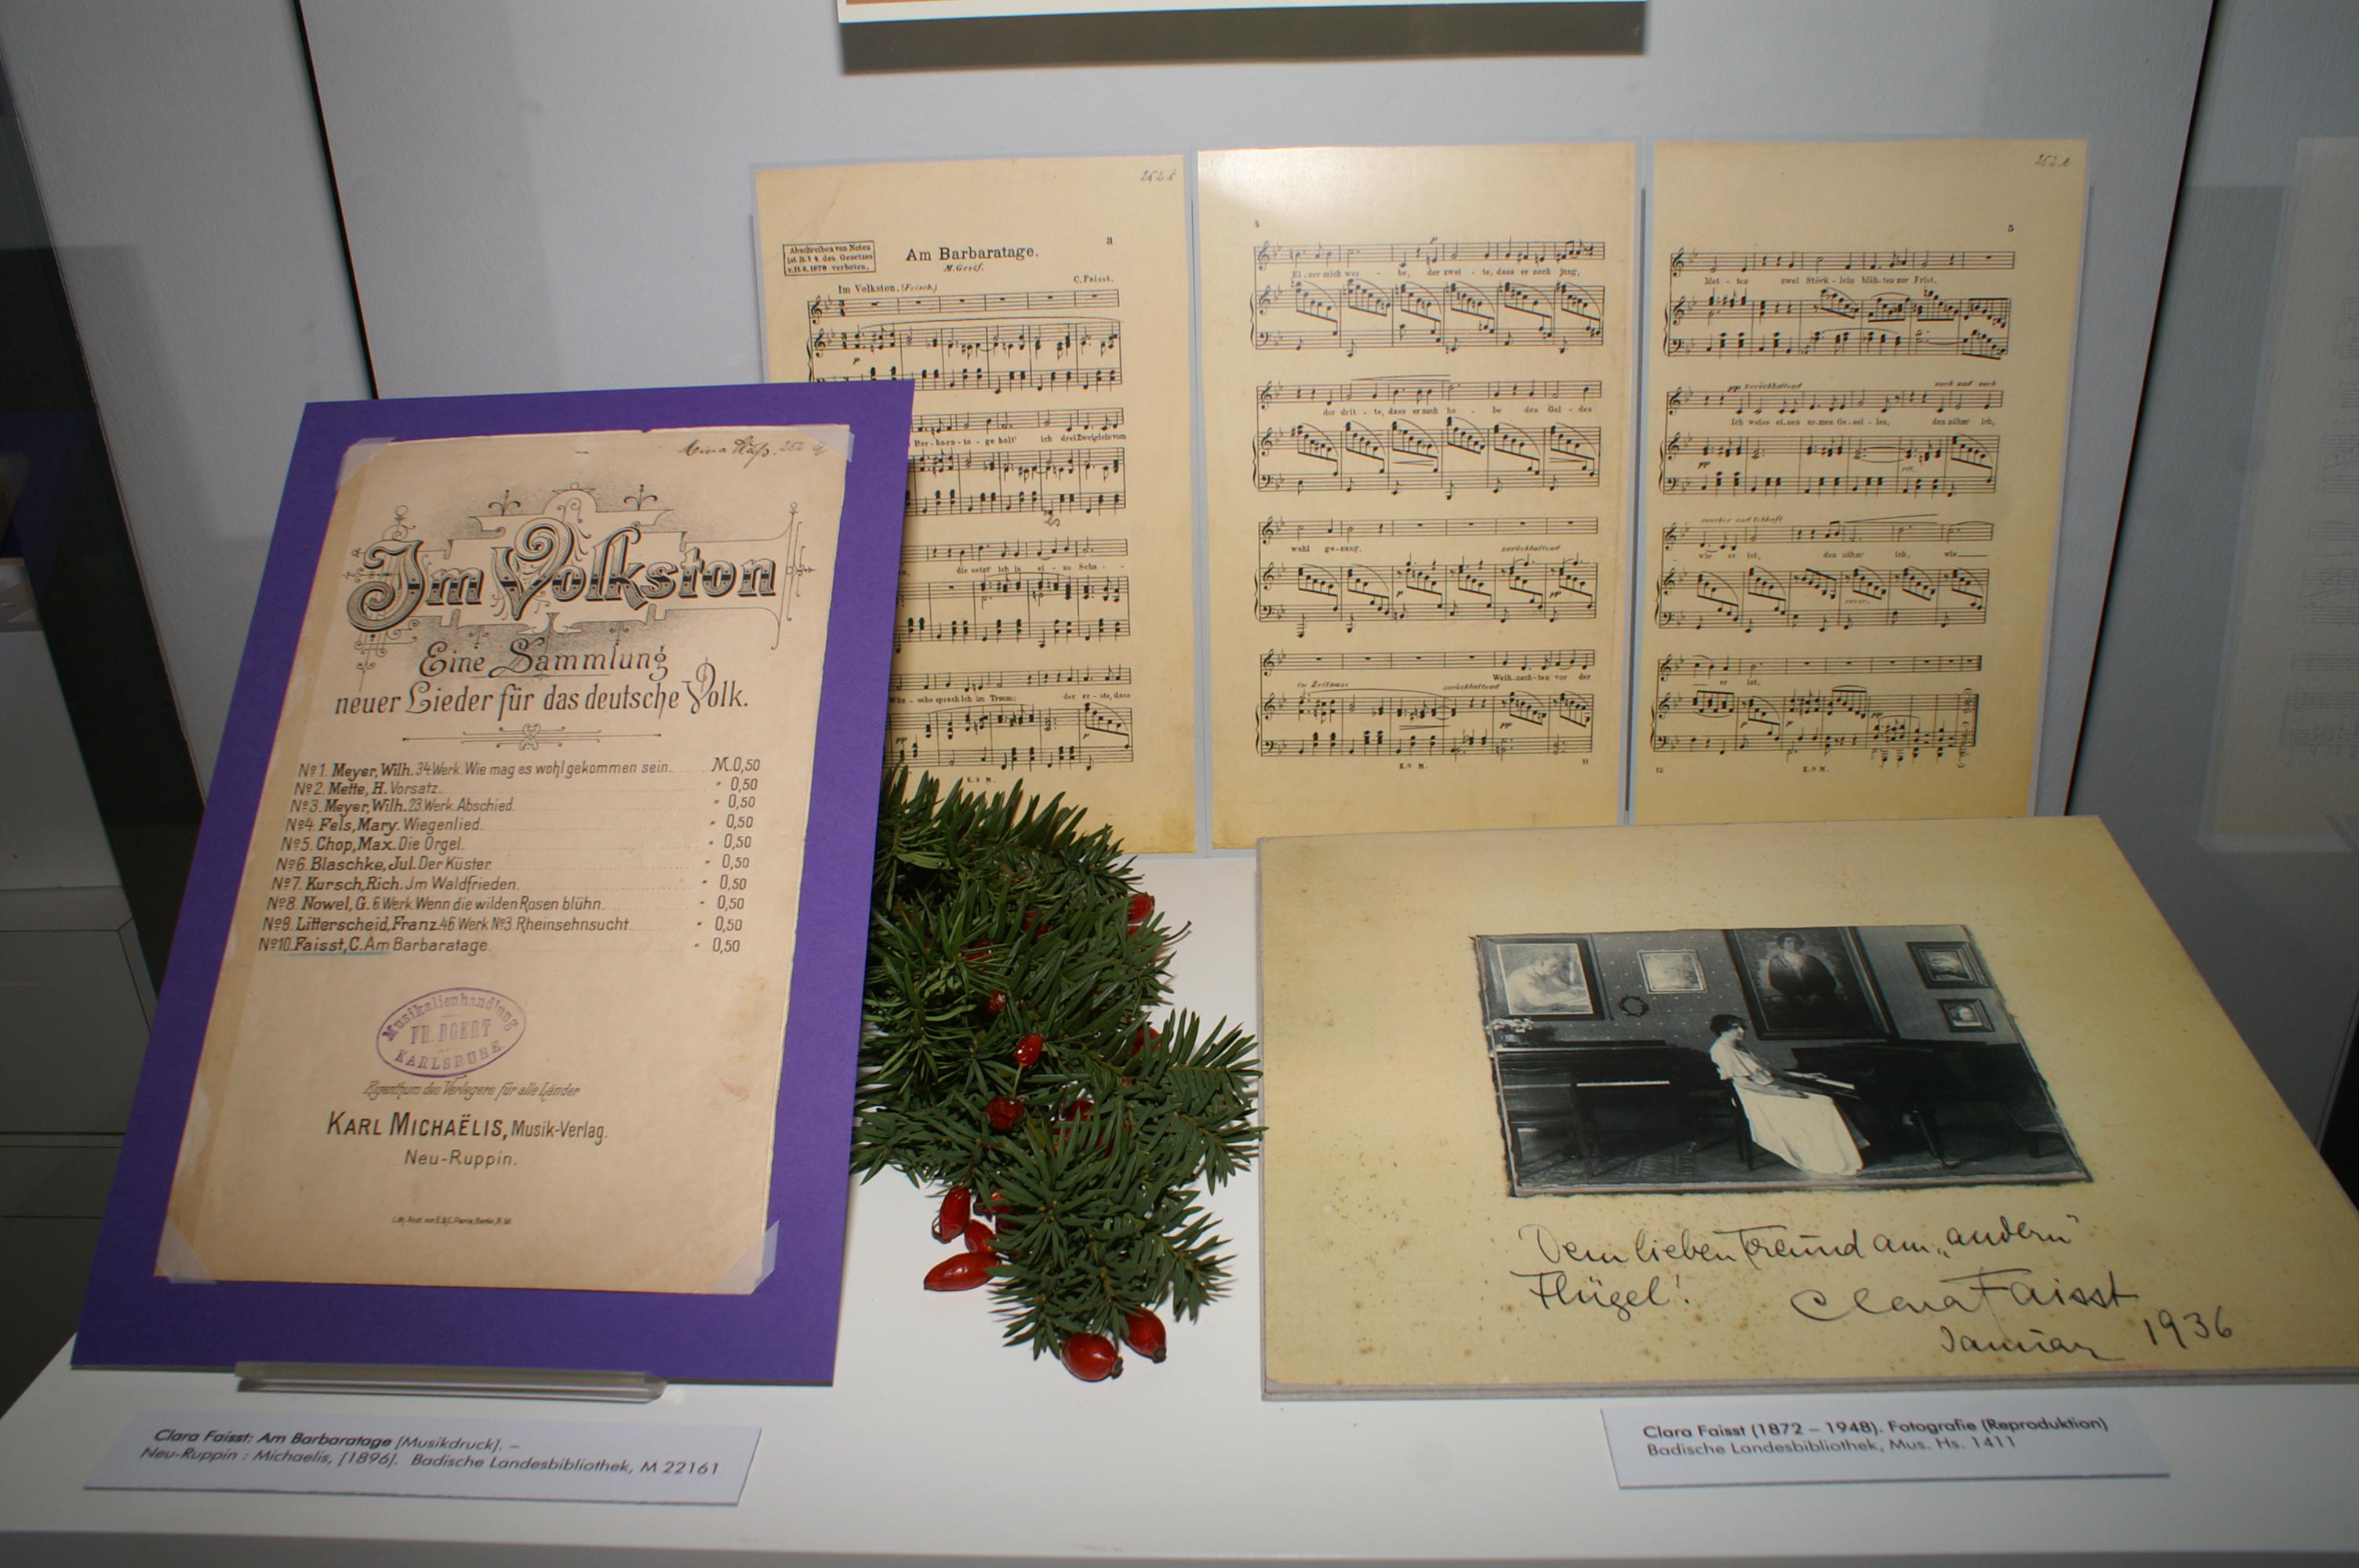 Ausgestellt sind Notenblätter, ein Musikdruck und eine schwarz-weiß Fotografie von Clara Faisst am Klavier. Dekoriert ist die Vitrine mit Tannenzweigen und Hagebutten.